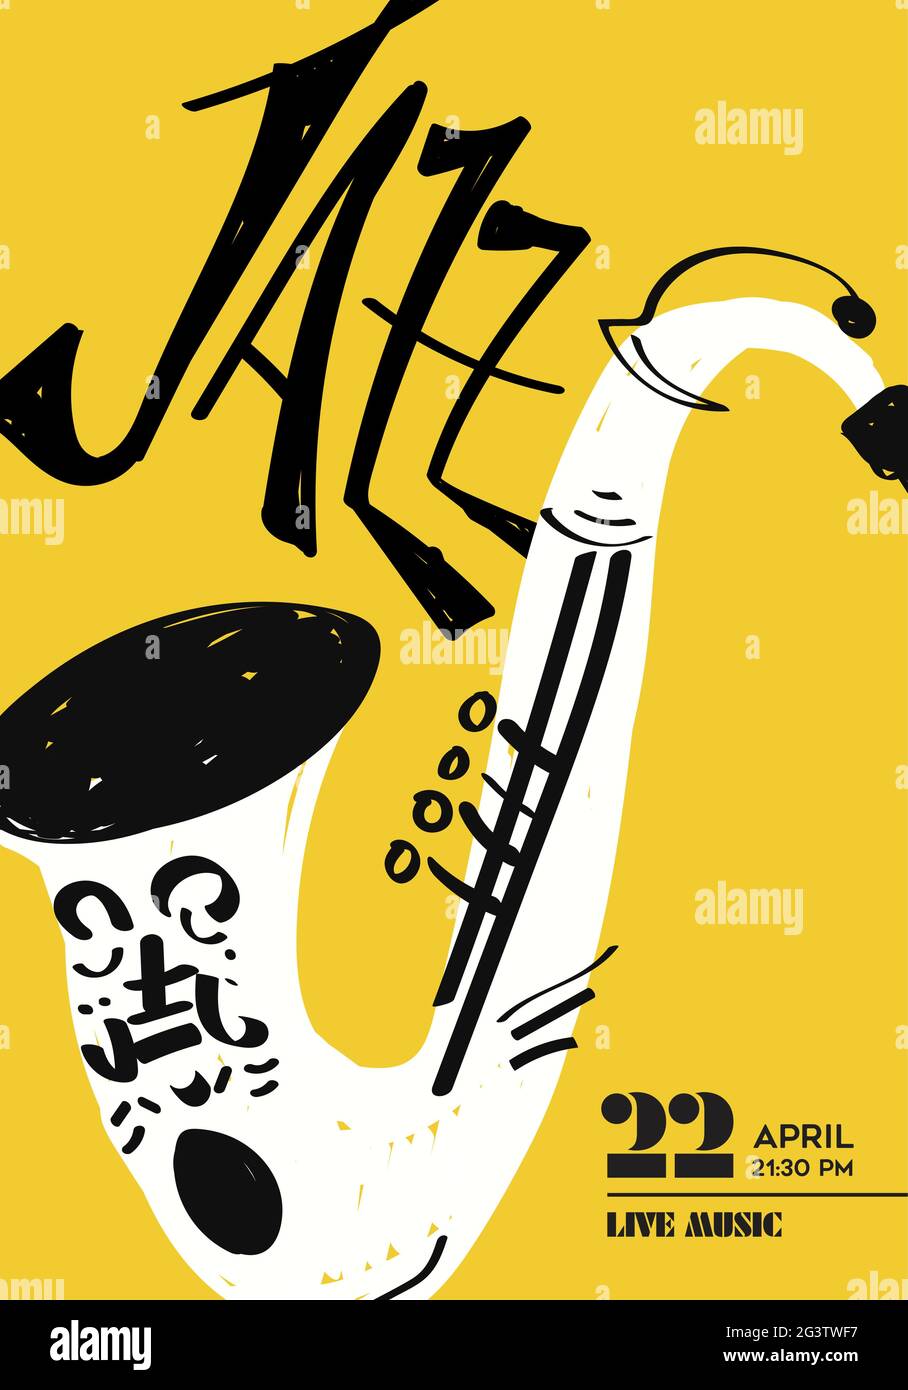 Poster di musica jazz illustrazione di divertente sassofono strumento doodle disegnato a mano. Modello di concerto musicale per night club o festa del festival. Illustrazione Vettoriale